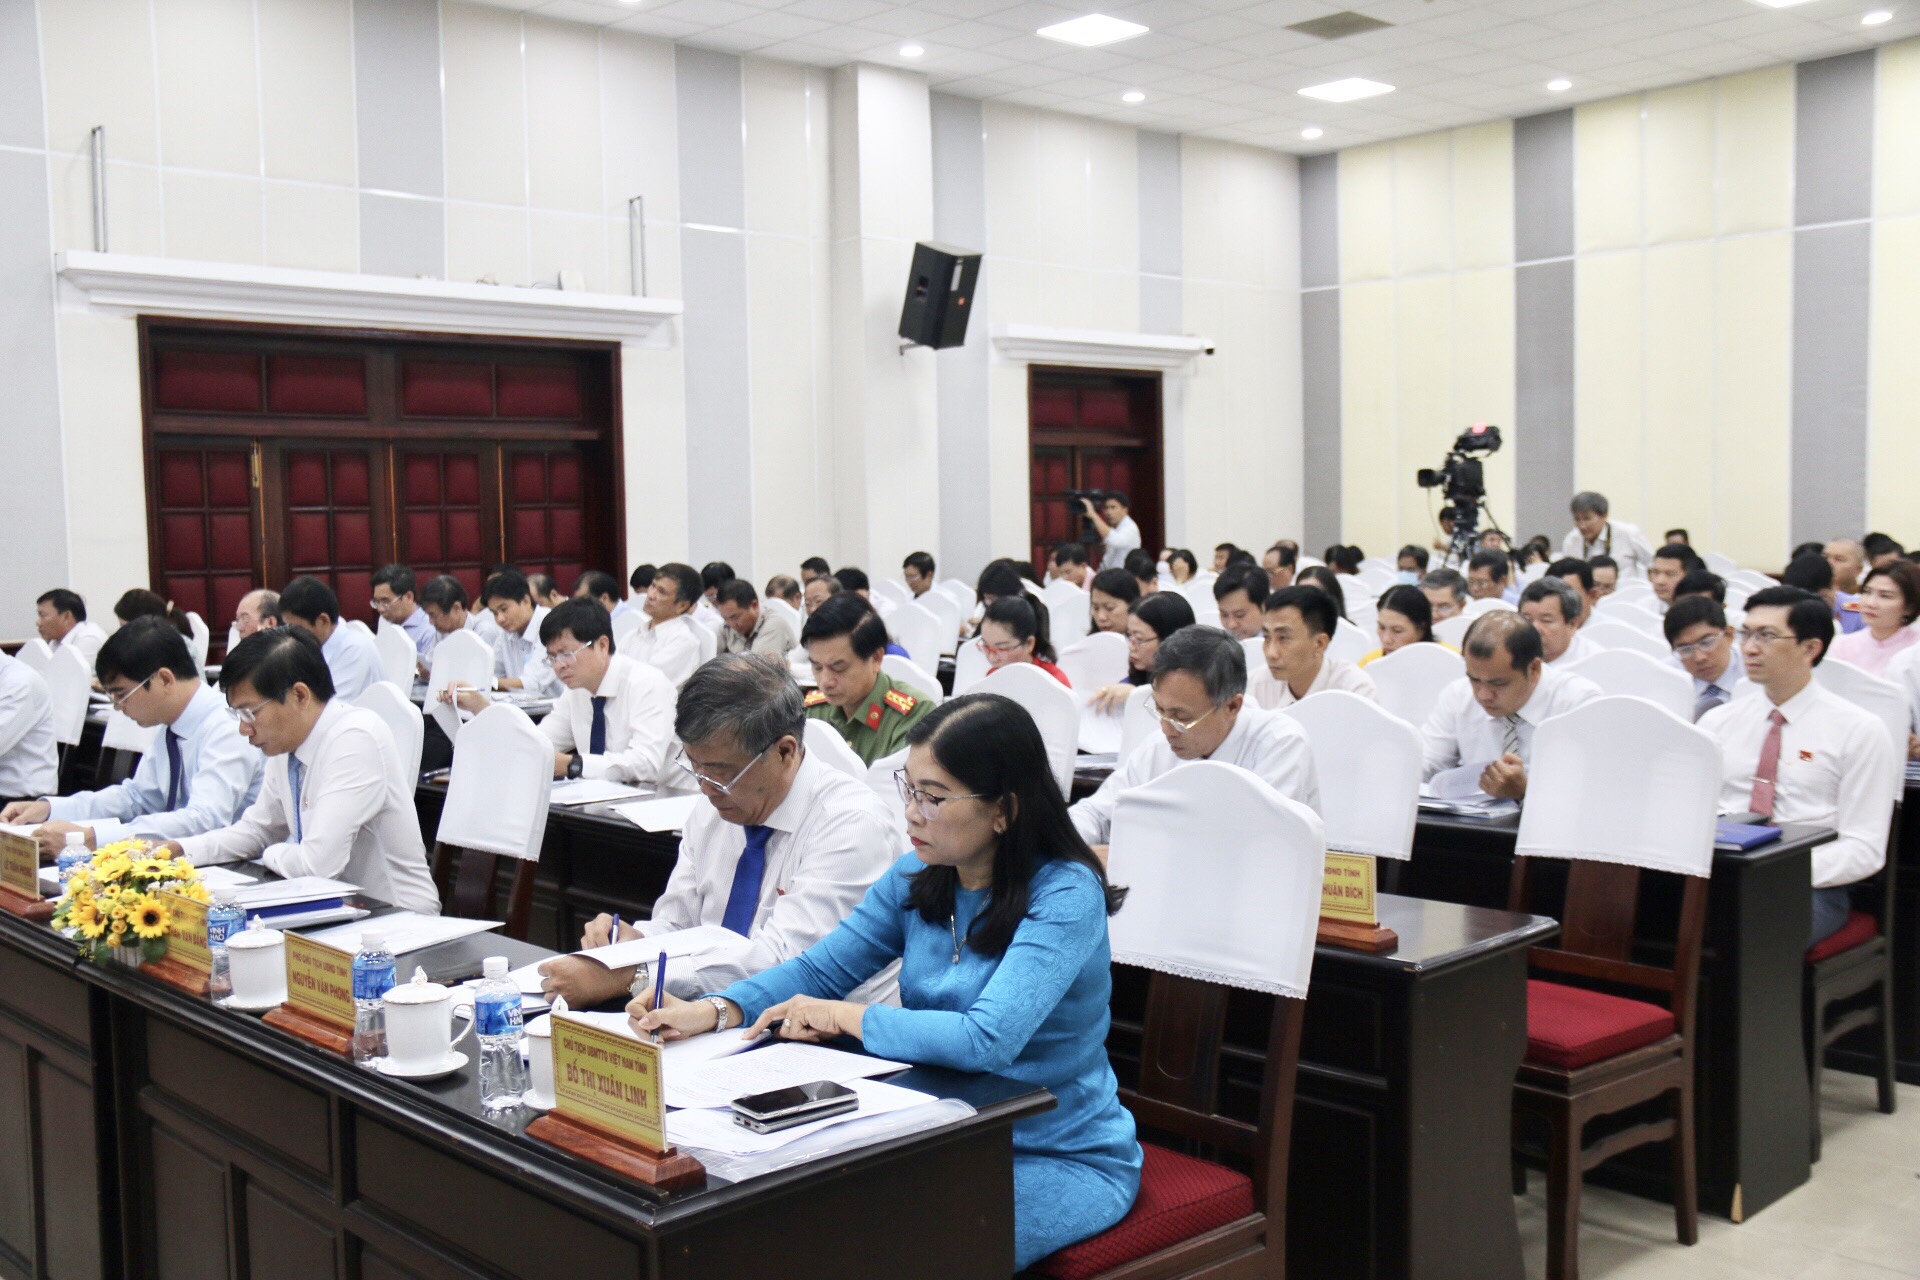 Họp HĐND tỉnh Bình Thuận: Cử tri kiến nghị các vấn đề liên quan đến sản xuất, đất đai, nước sạch sinh hoạt  - Ảnh 3.